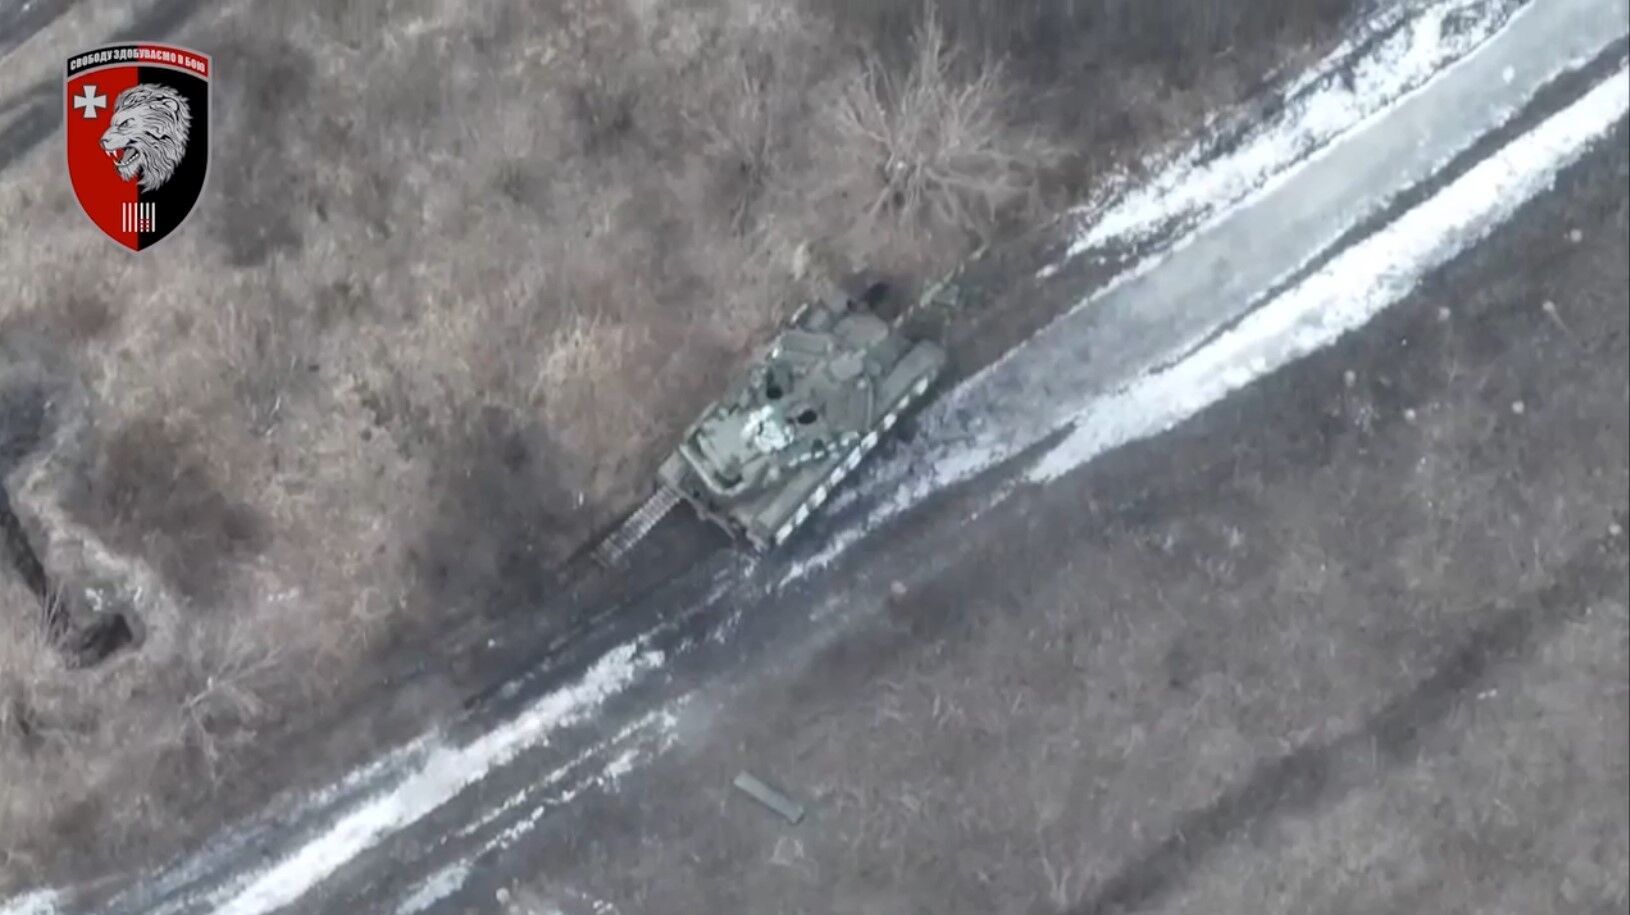 "Охота" была удачной: воины 63-й ОМБр уничтожили вражеский танк Т-90 и миномет. Видео